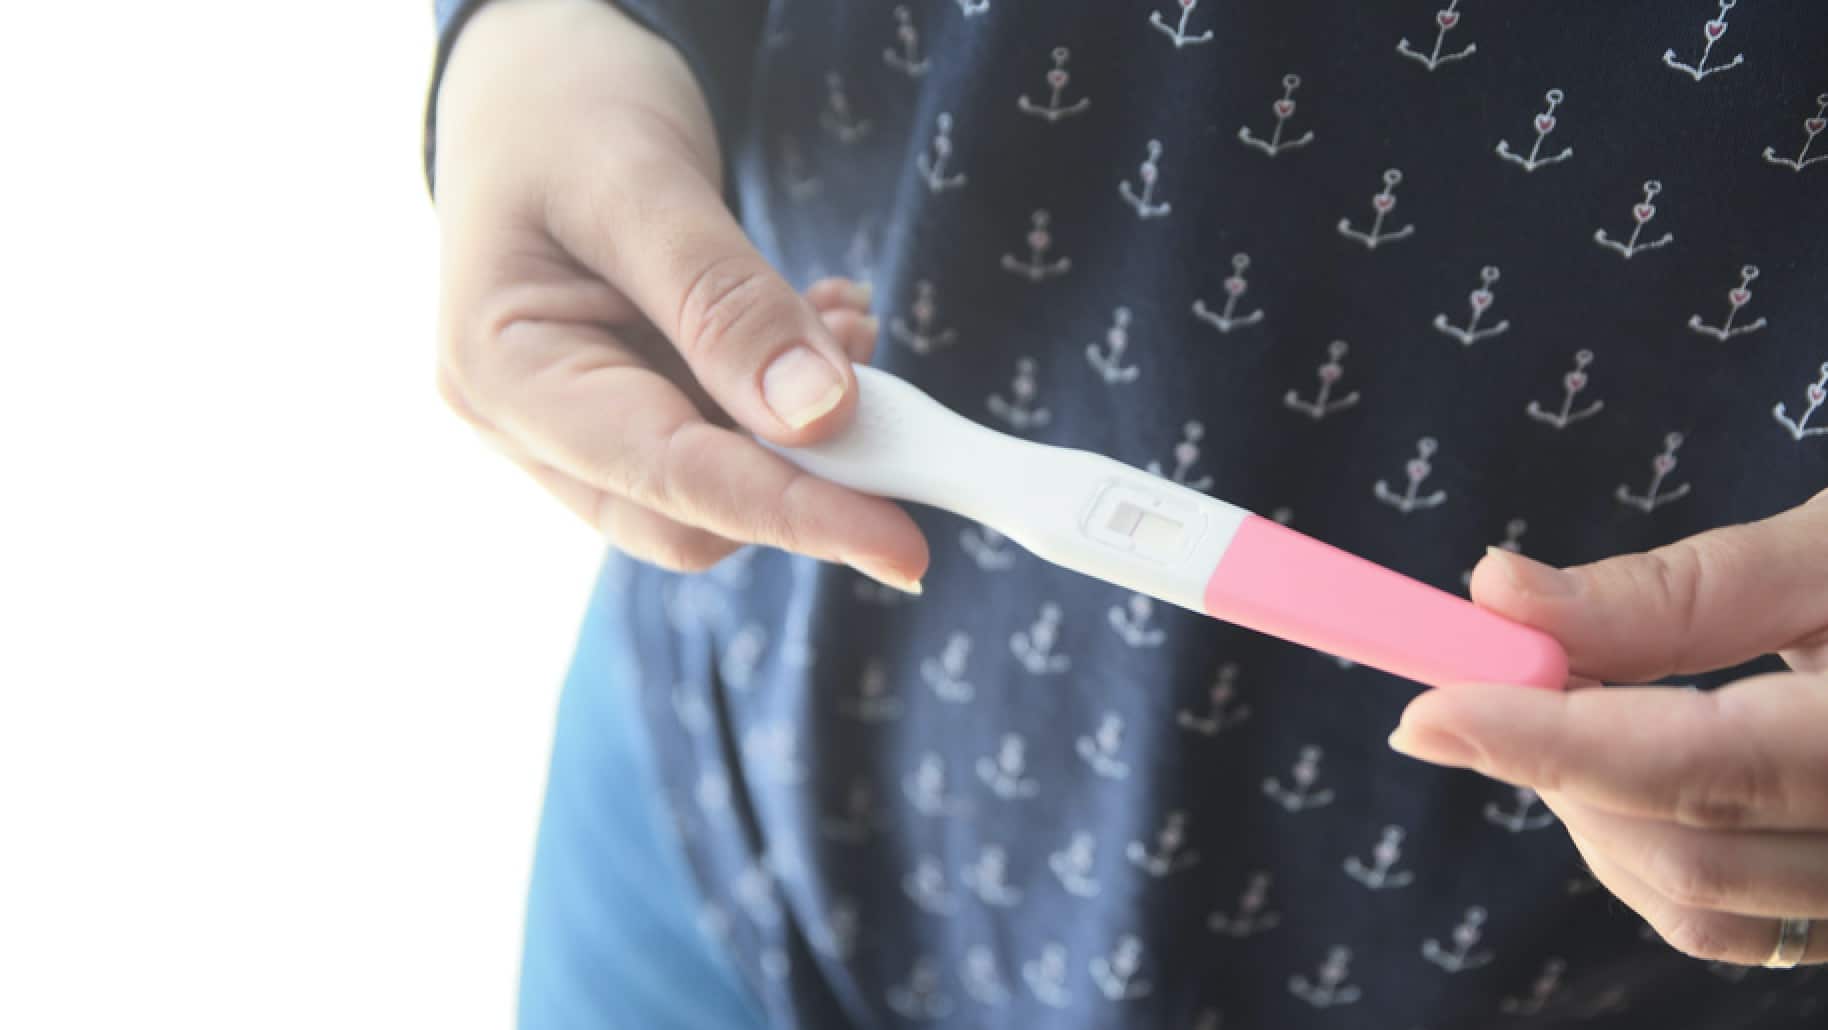 Тест на беременность в руках у девушки. Тест на беременность с красными ногтями. Тест на беременность в руках у девушки отрицательный. Девушка с тестом на беременность в руках. Пустой тест на беременность.